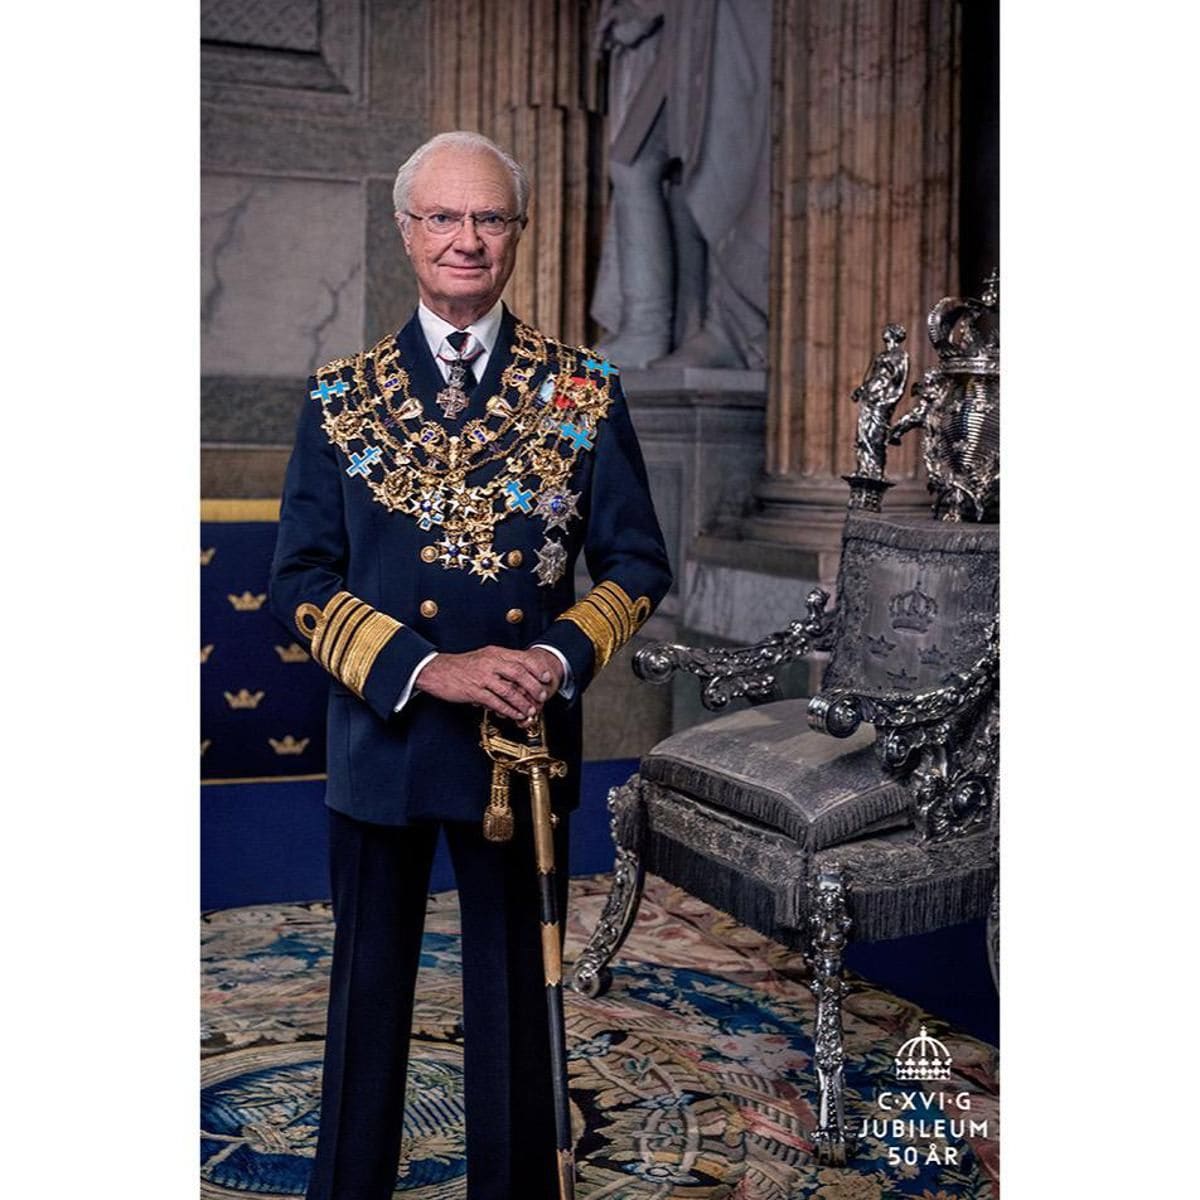 The Swedish King’s jubilee portrait was released on Jan. 1